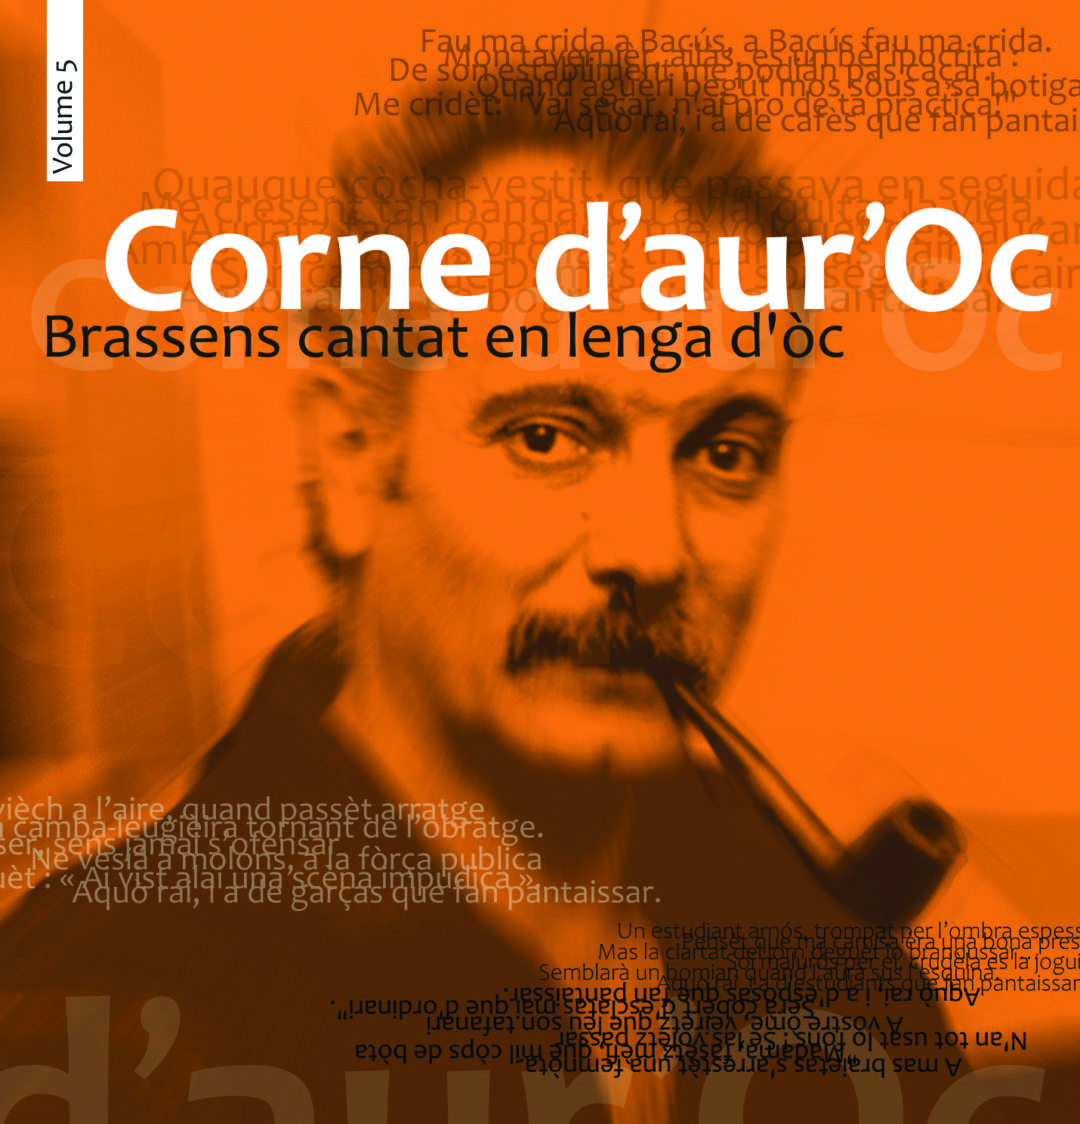 Corne d’aur’Òc (volume 5)